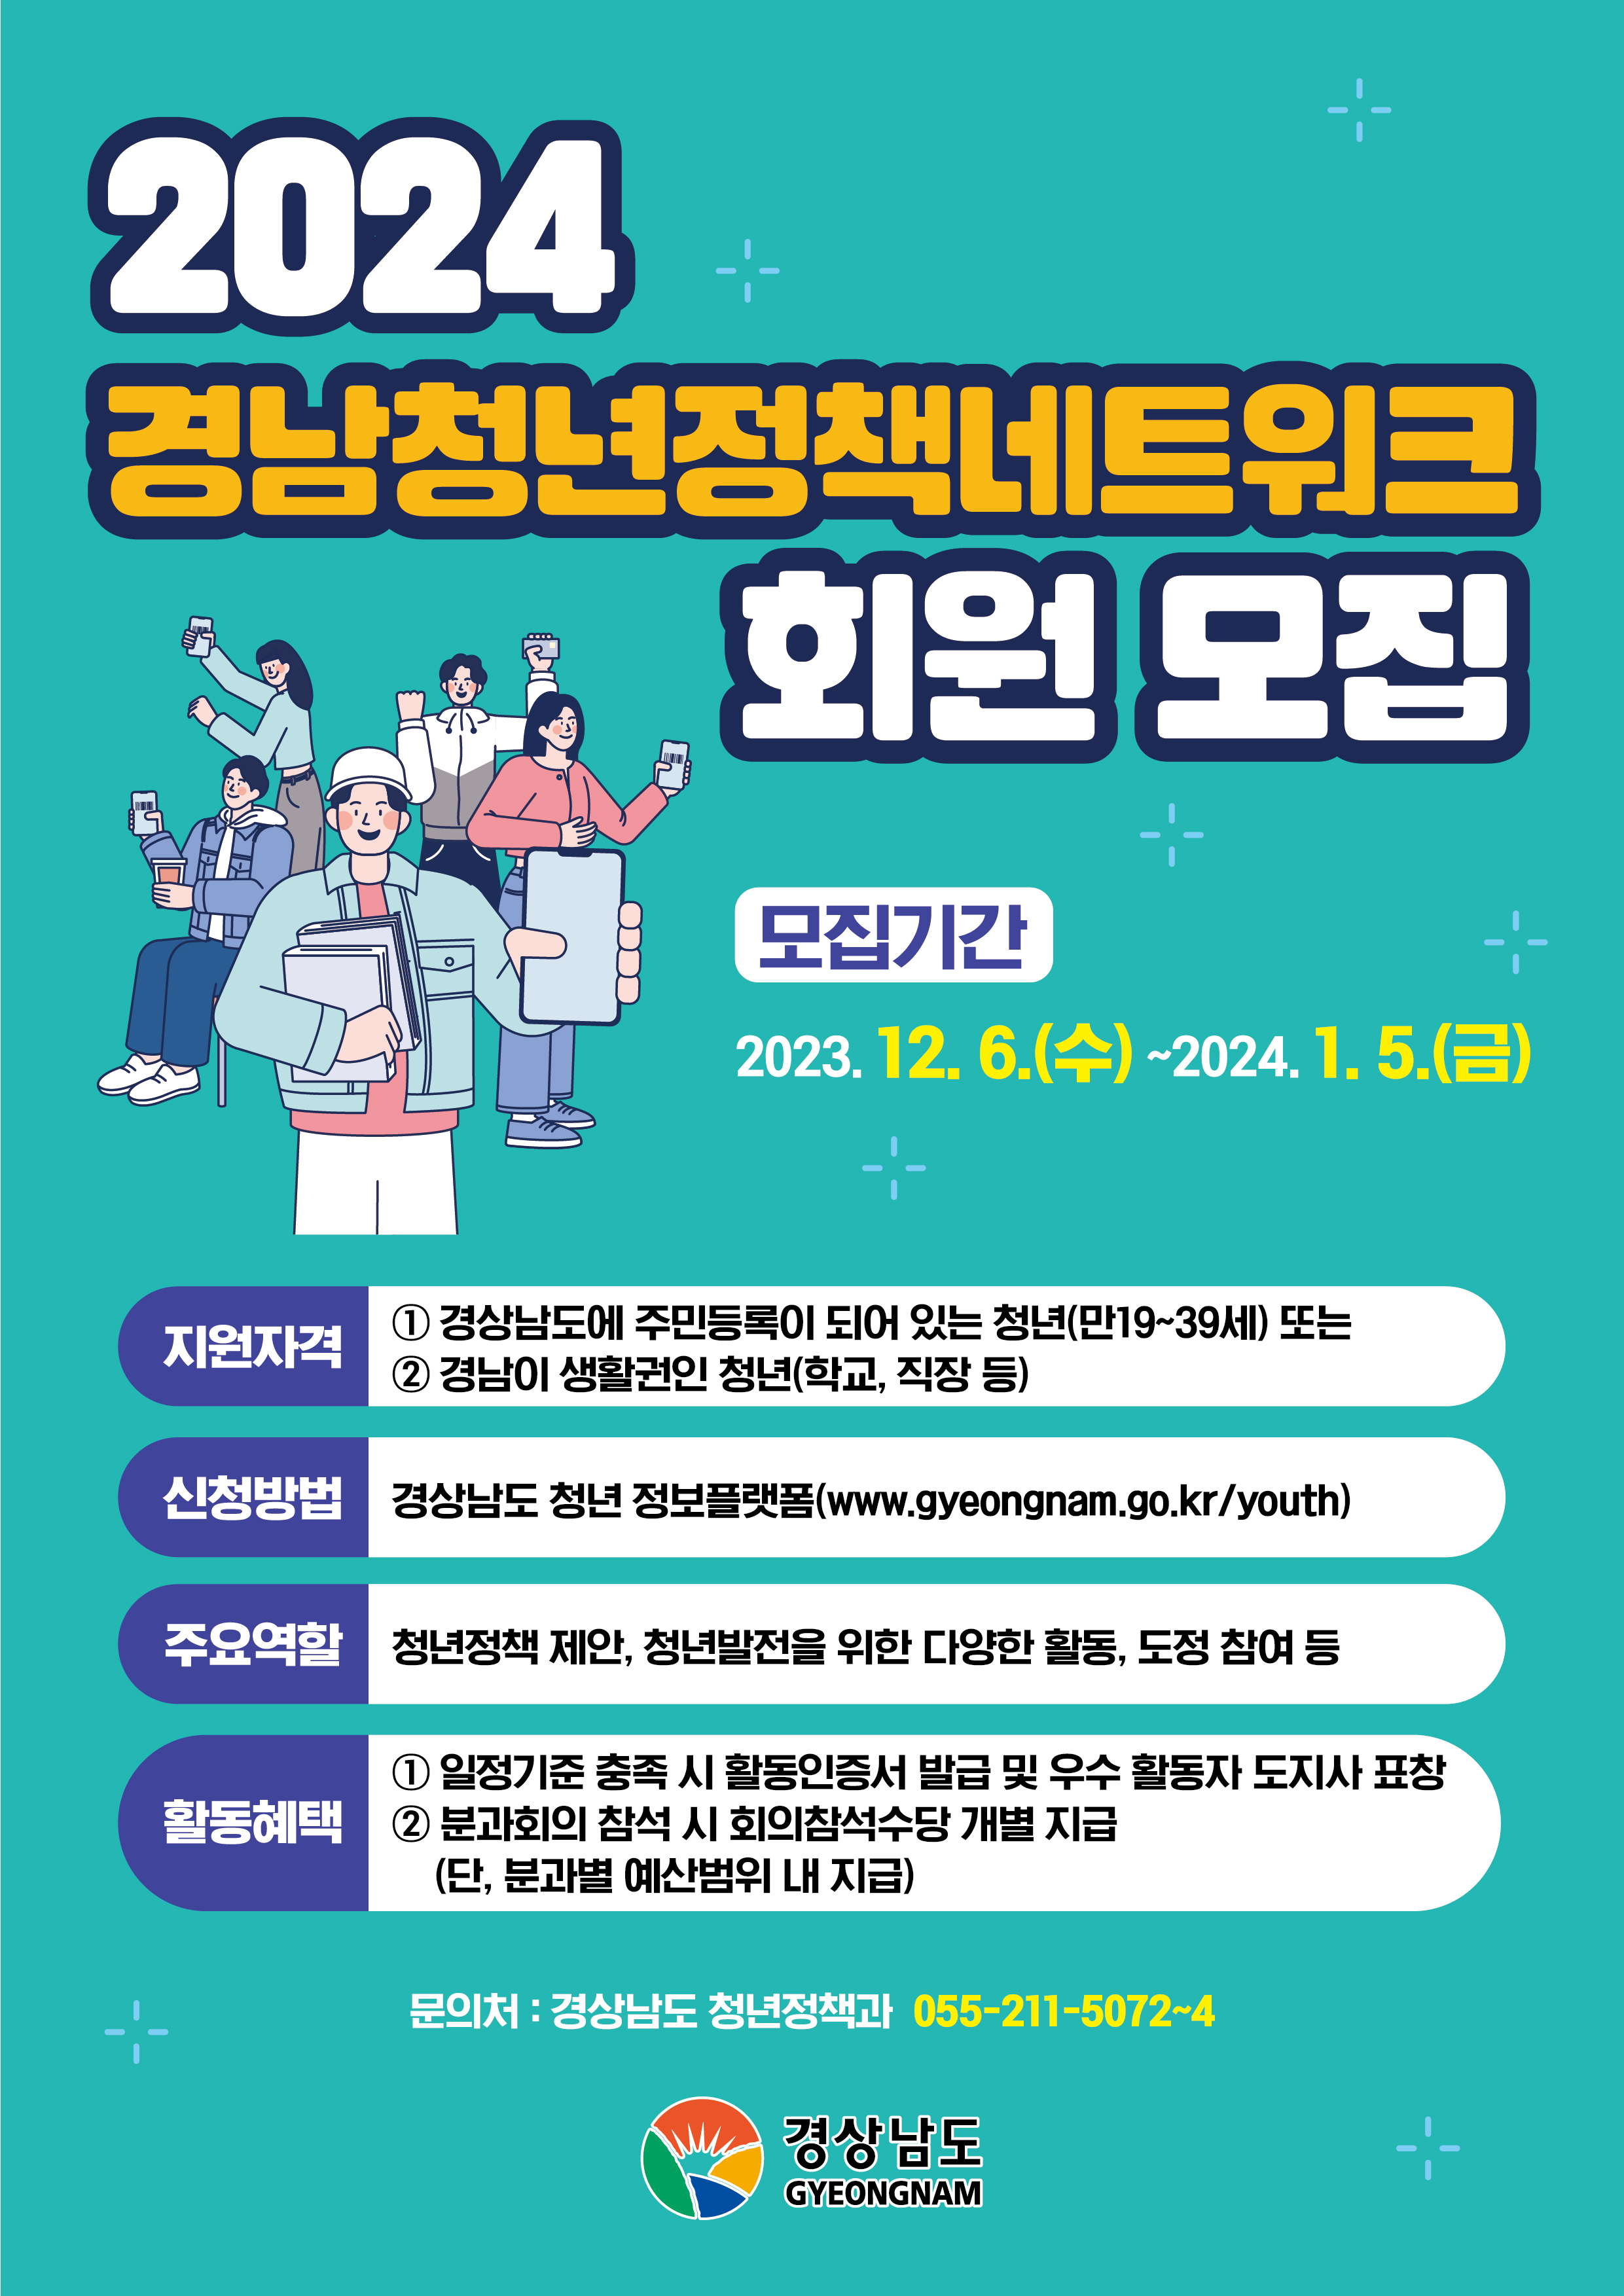 2024경남청년정책네트워크회원모집_웹포스터.jpg